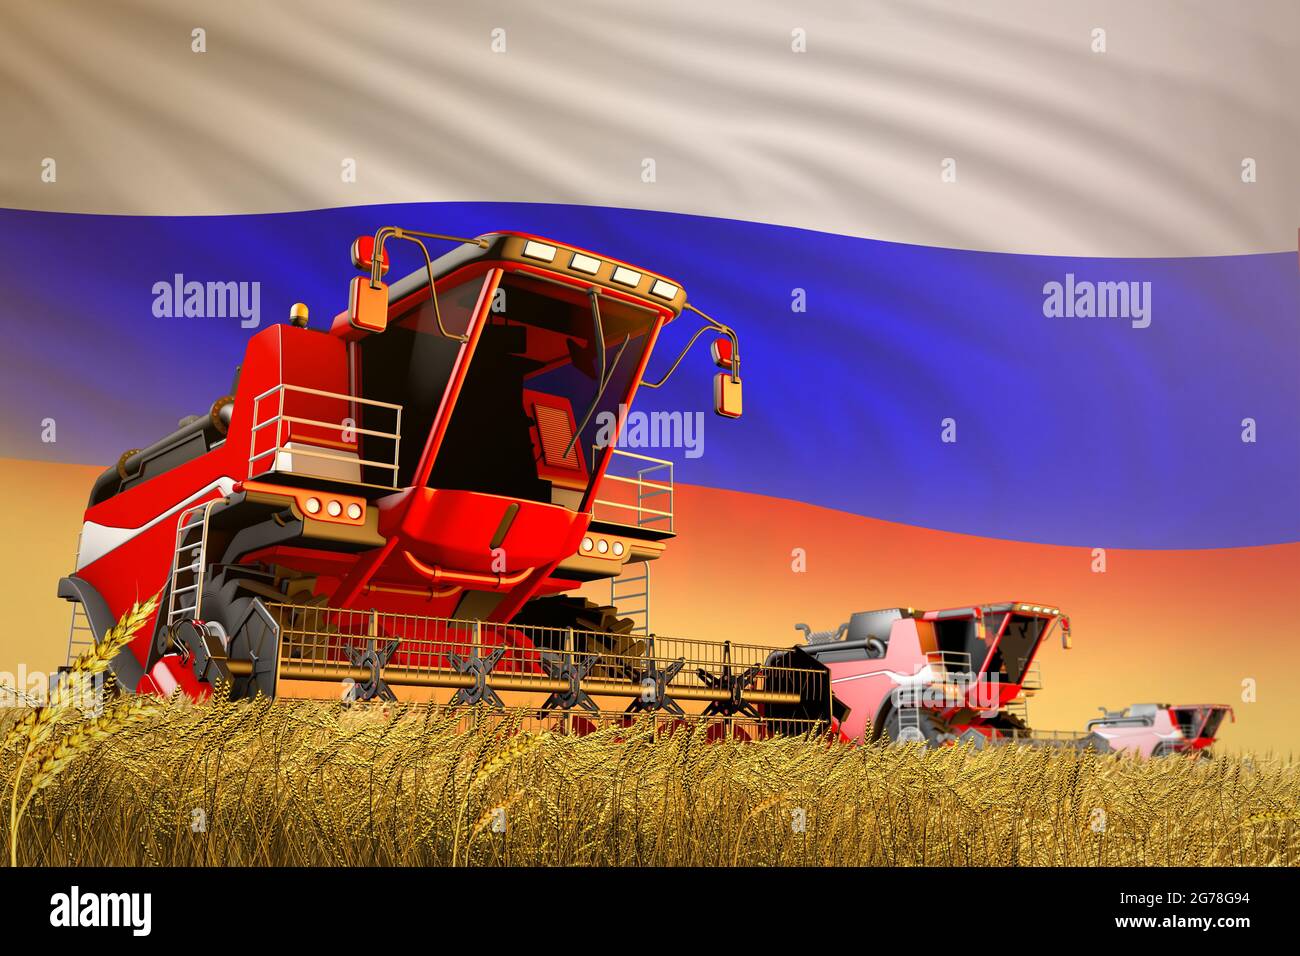 Landwirtschaftliche Mähdrescher arbeiten auf Weizenfeld mit Russland Flagge Hintergrund, Lebensmittelproduktion Konzept - industrielle 3D-Illustration Stockfoto